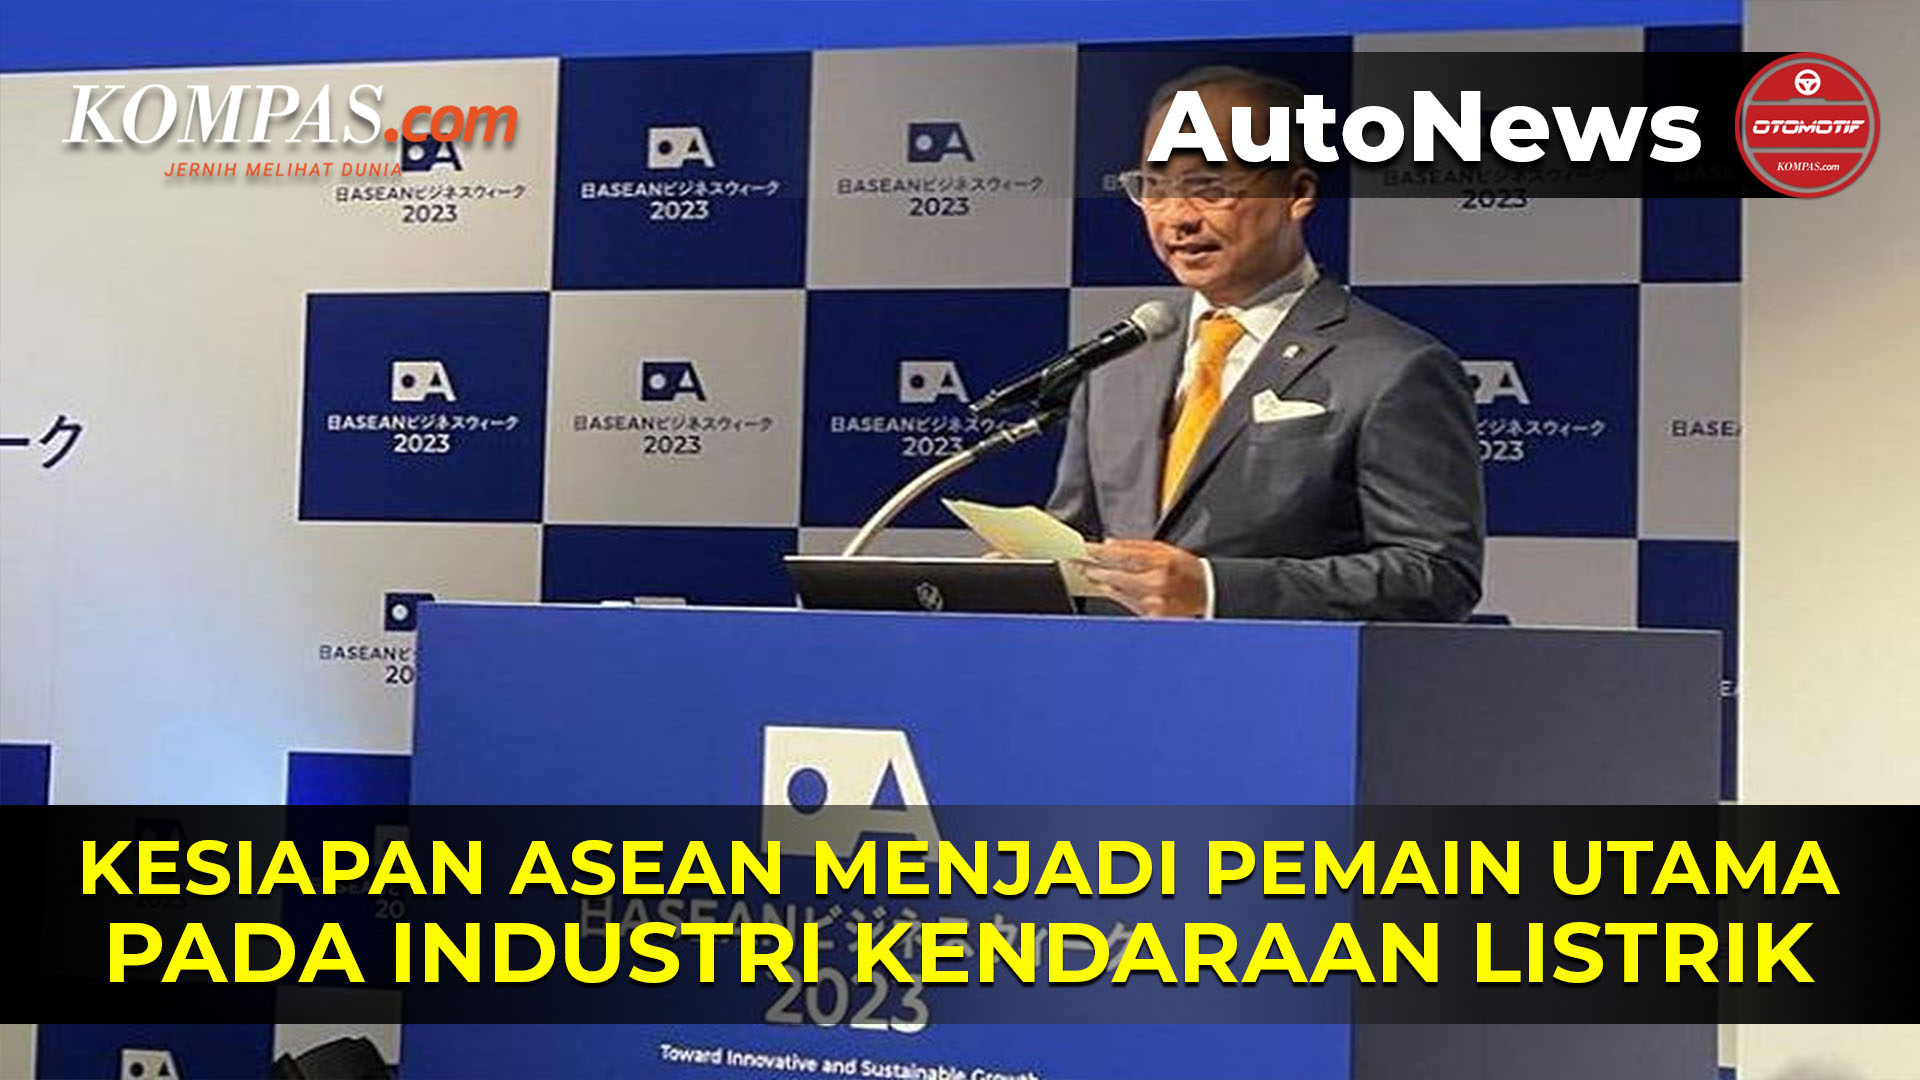 ASEAN Siap Jadi Pemain Utama Industri Kendaraan Listrik